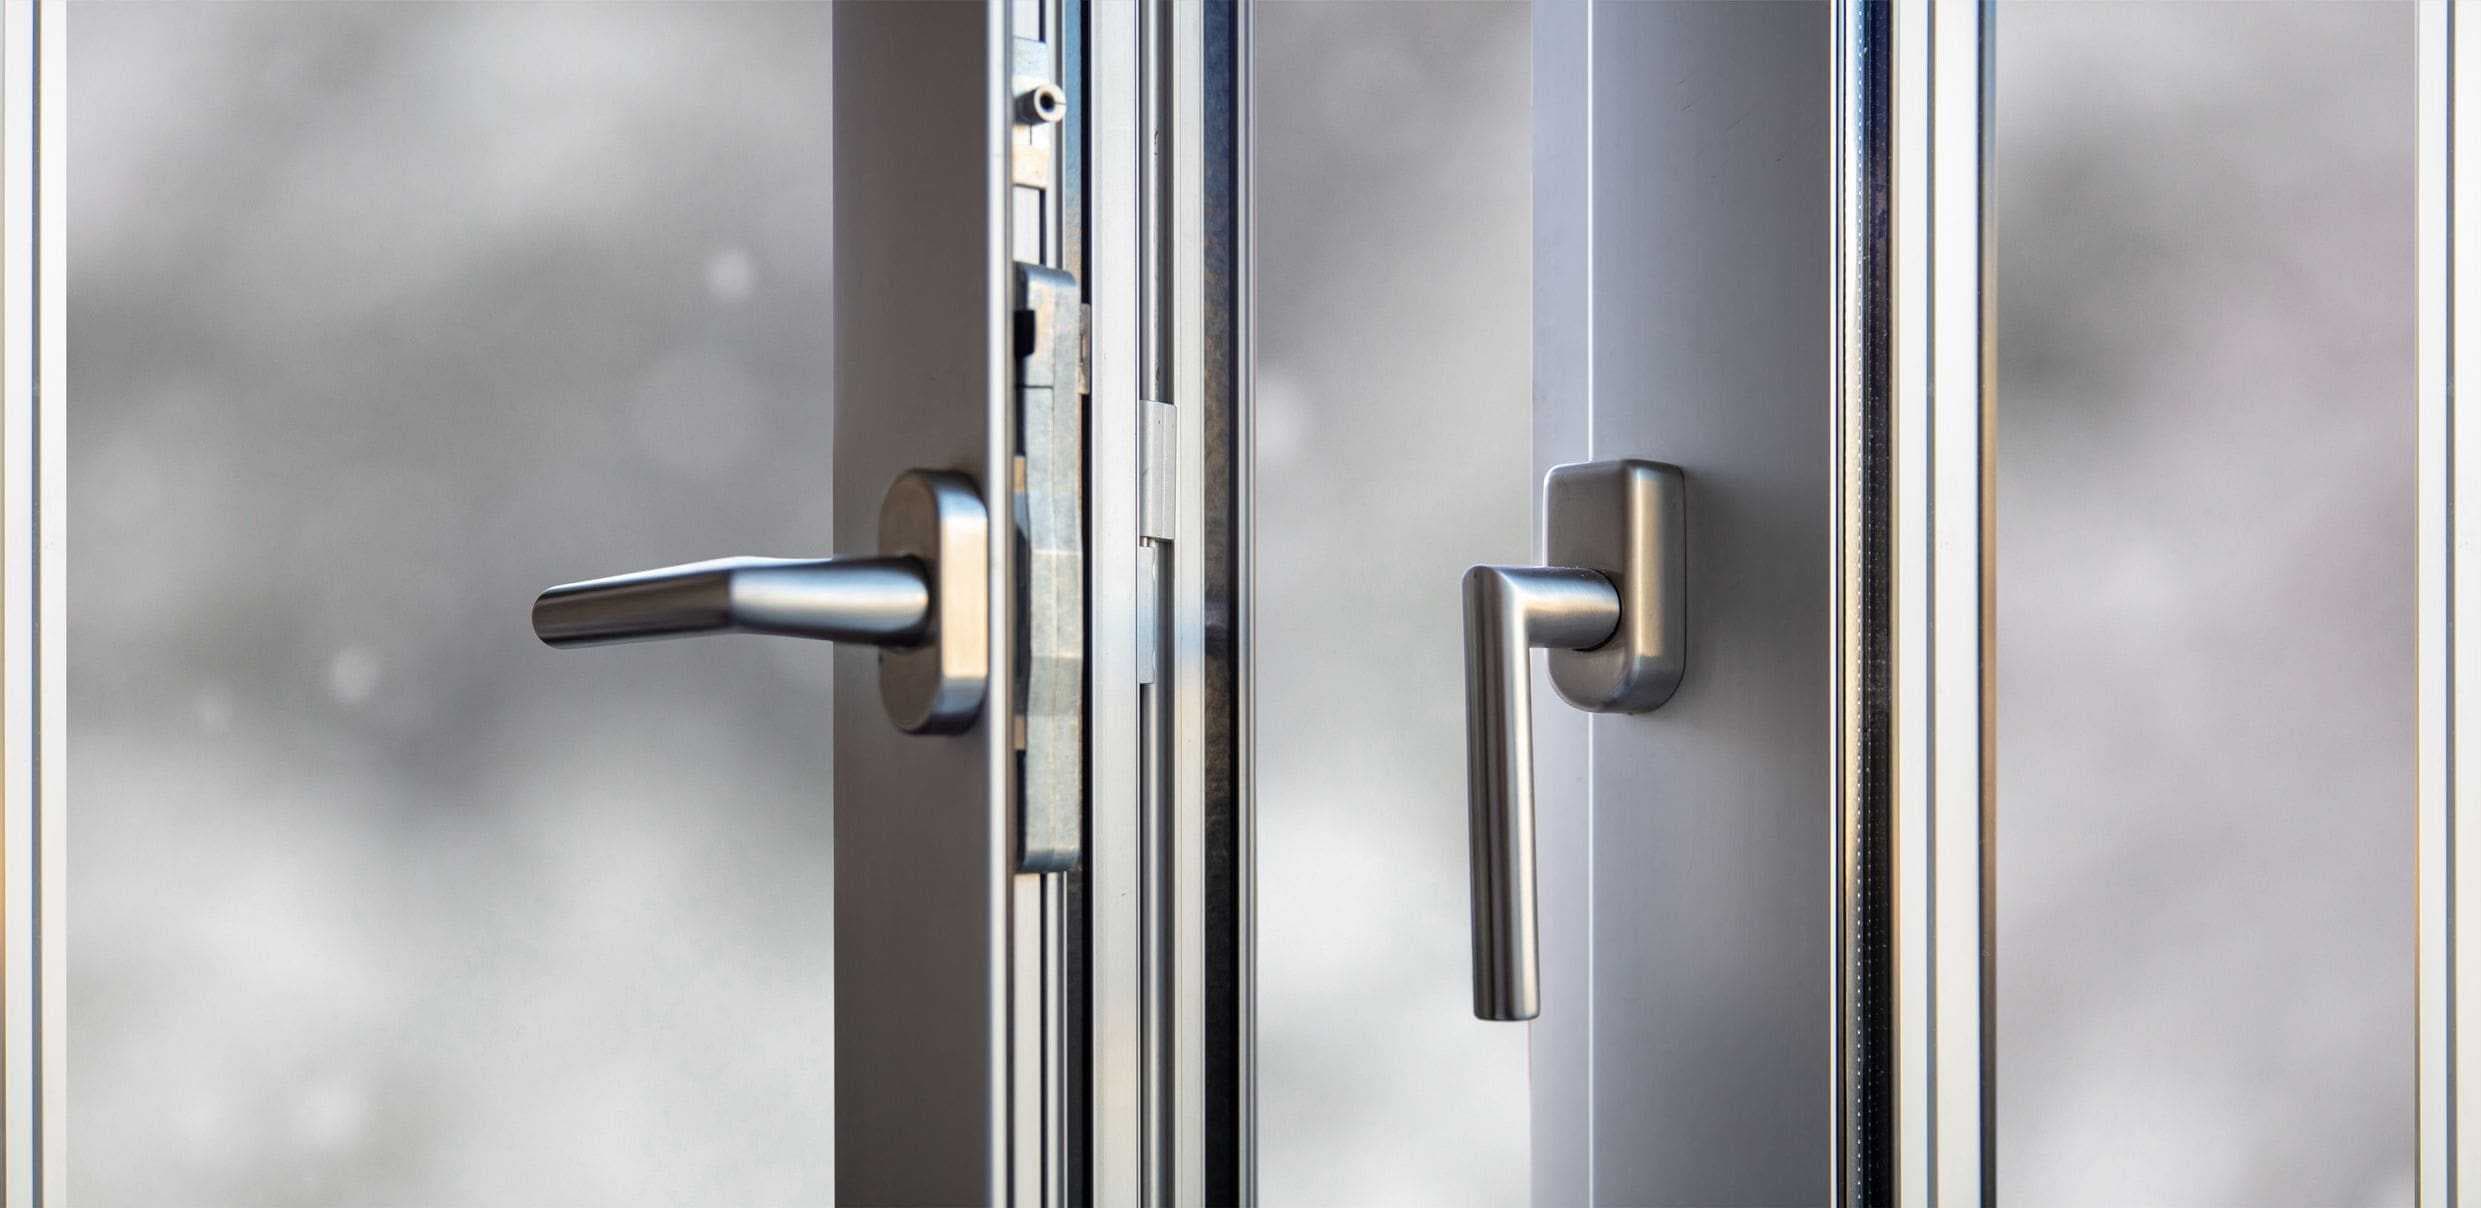 close up of locks and handles on steel pedestrian door